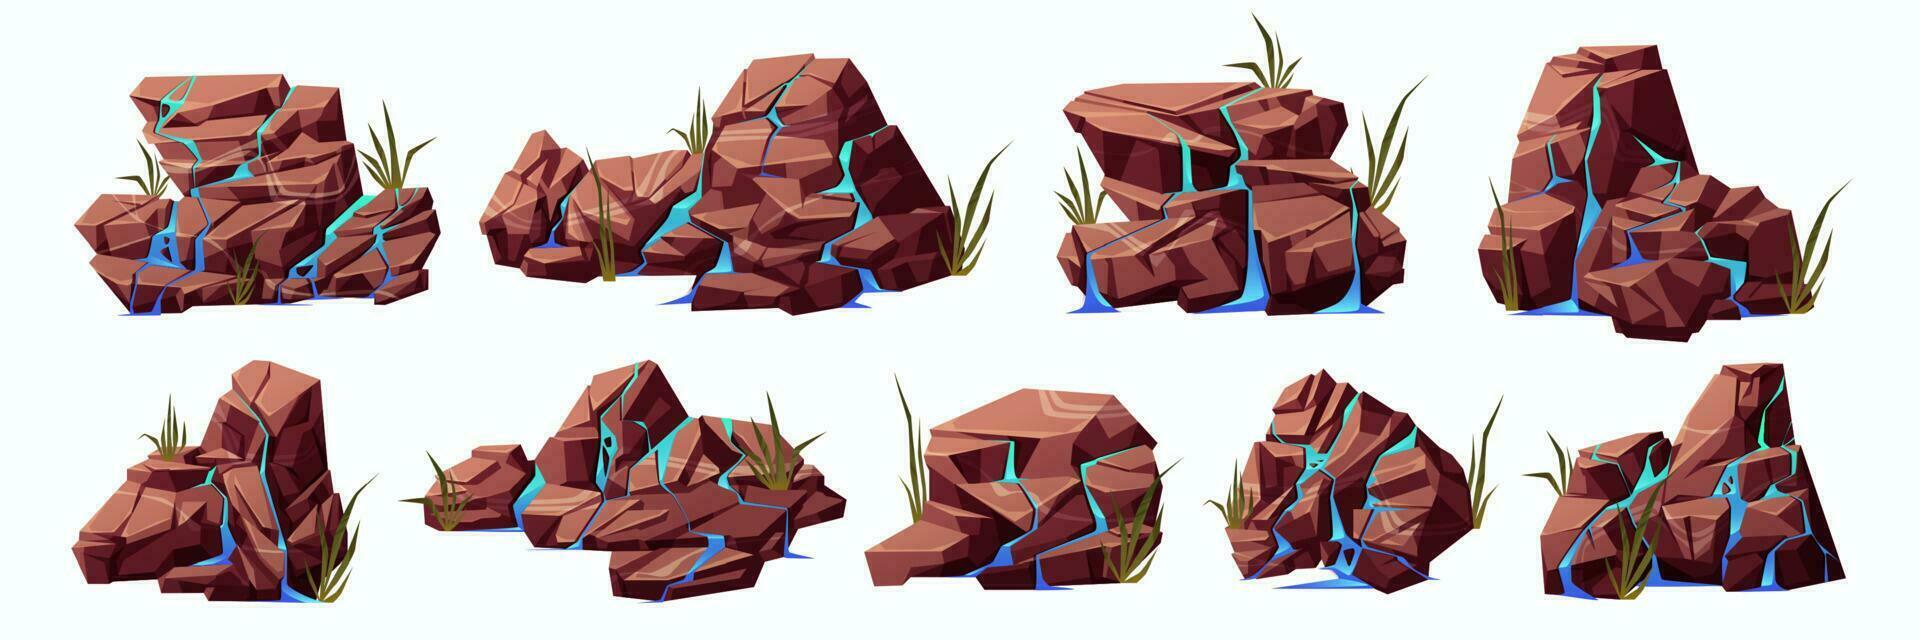 tecknad serie uppsättning av vatten strömmar på knäckt stenar vektor